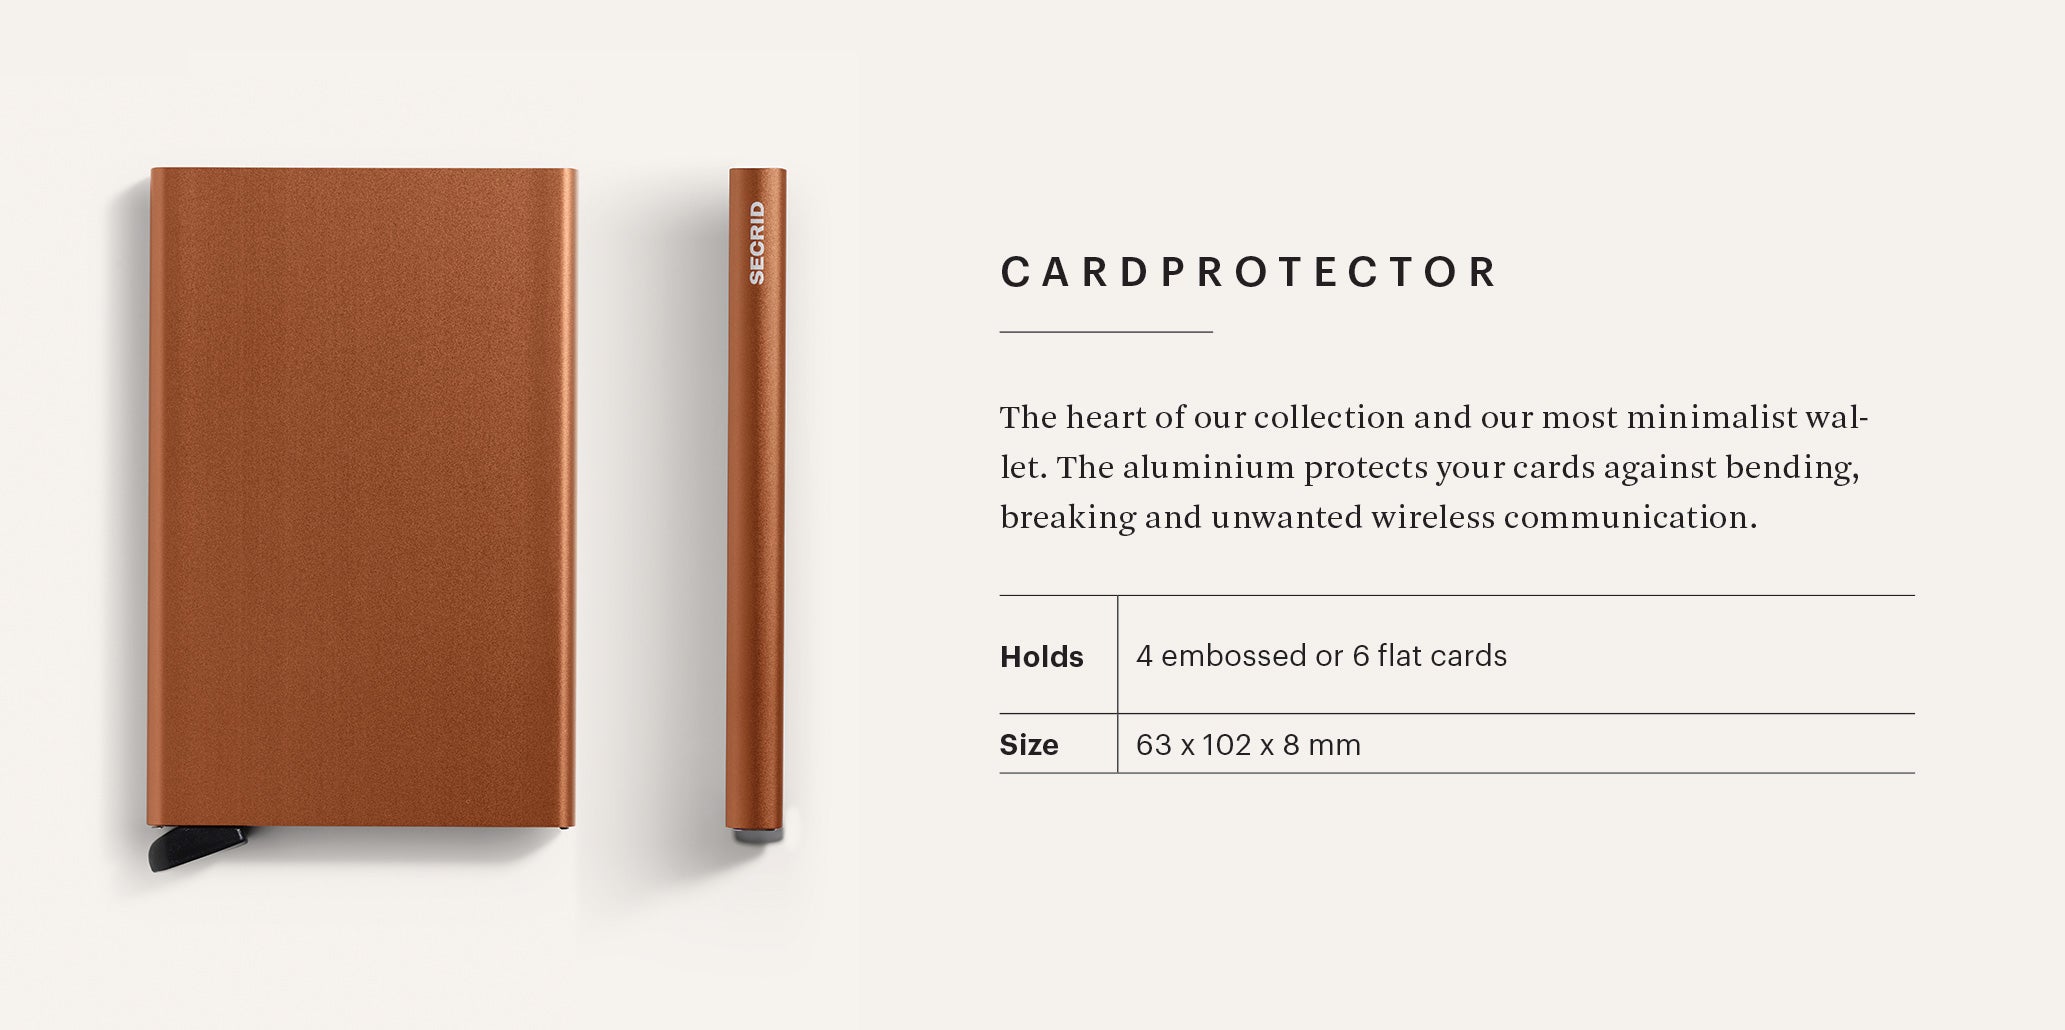 Cardprotector Powder